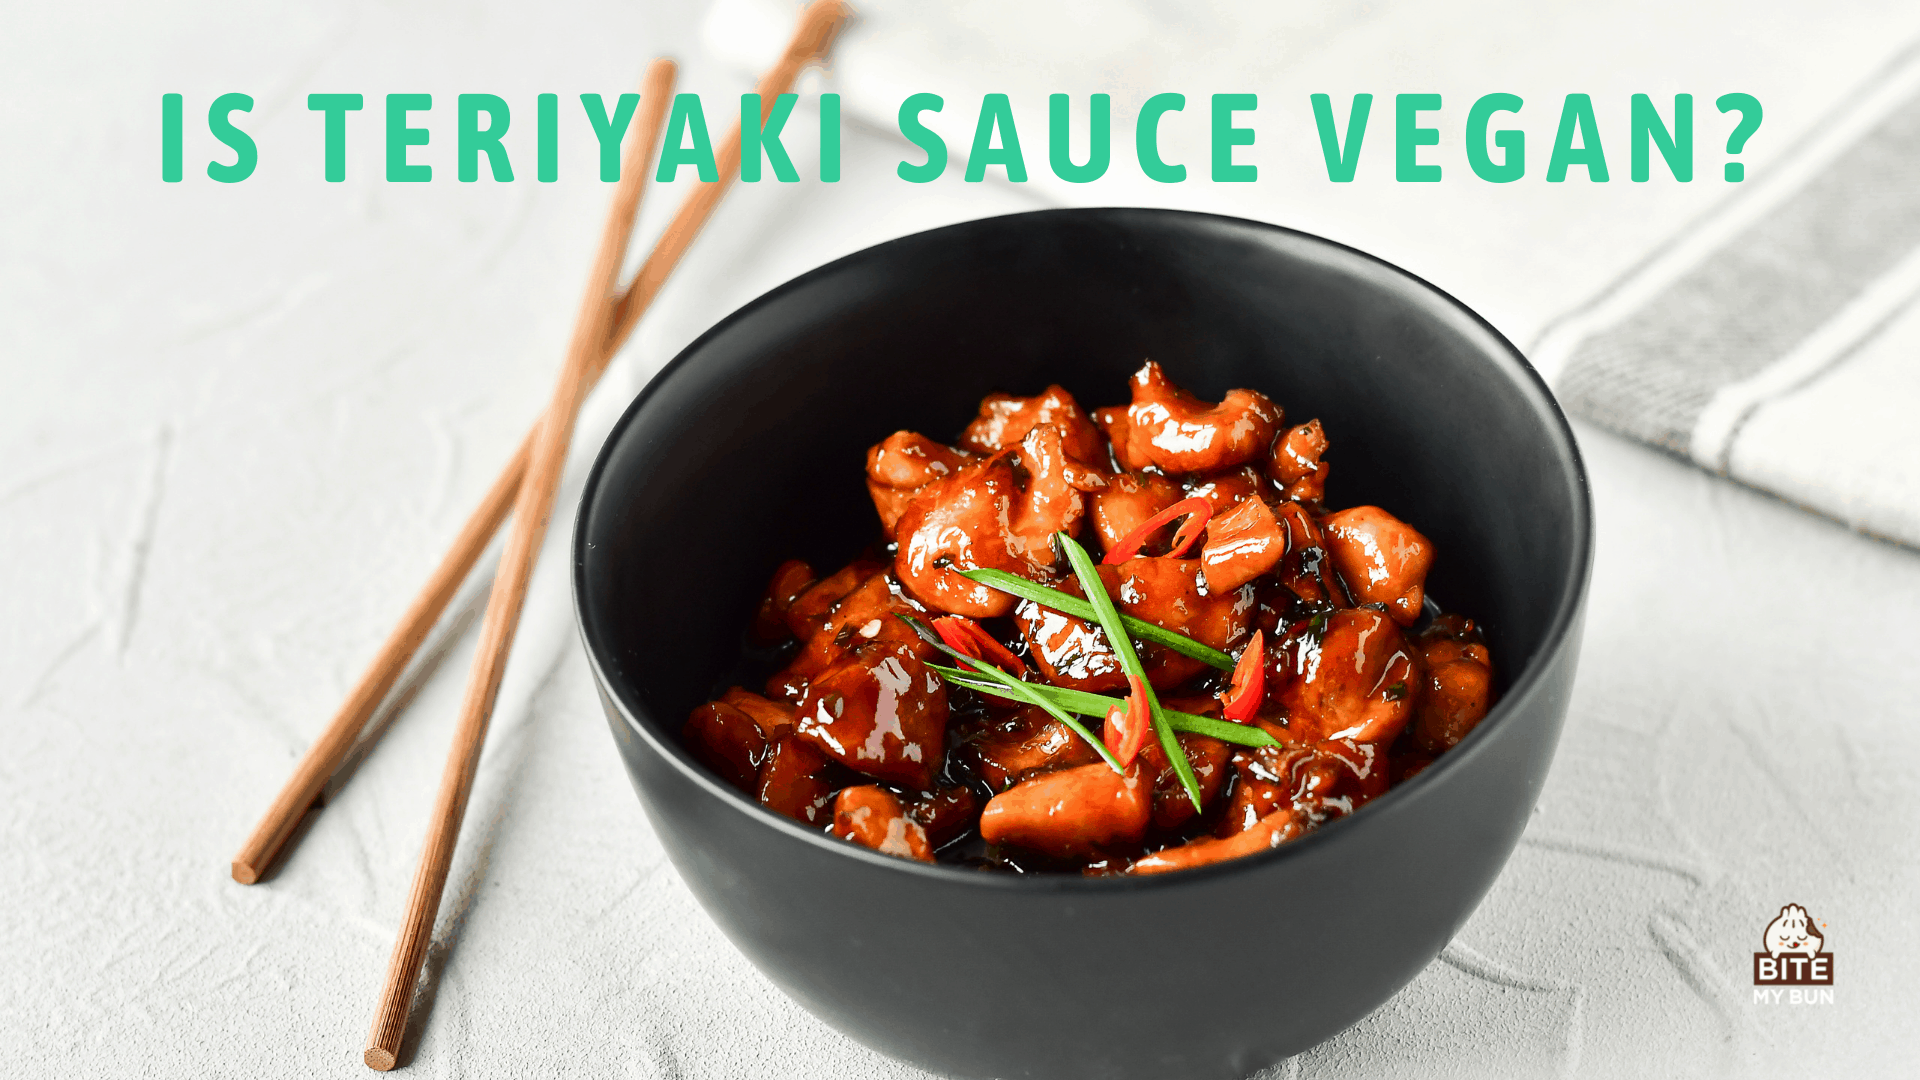 O molho teriyaki é vegano? Verifique os ingredientes!